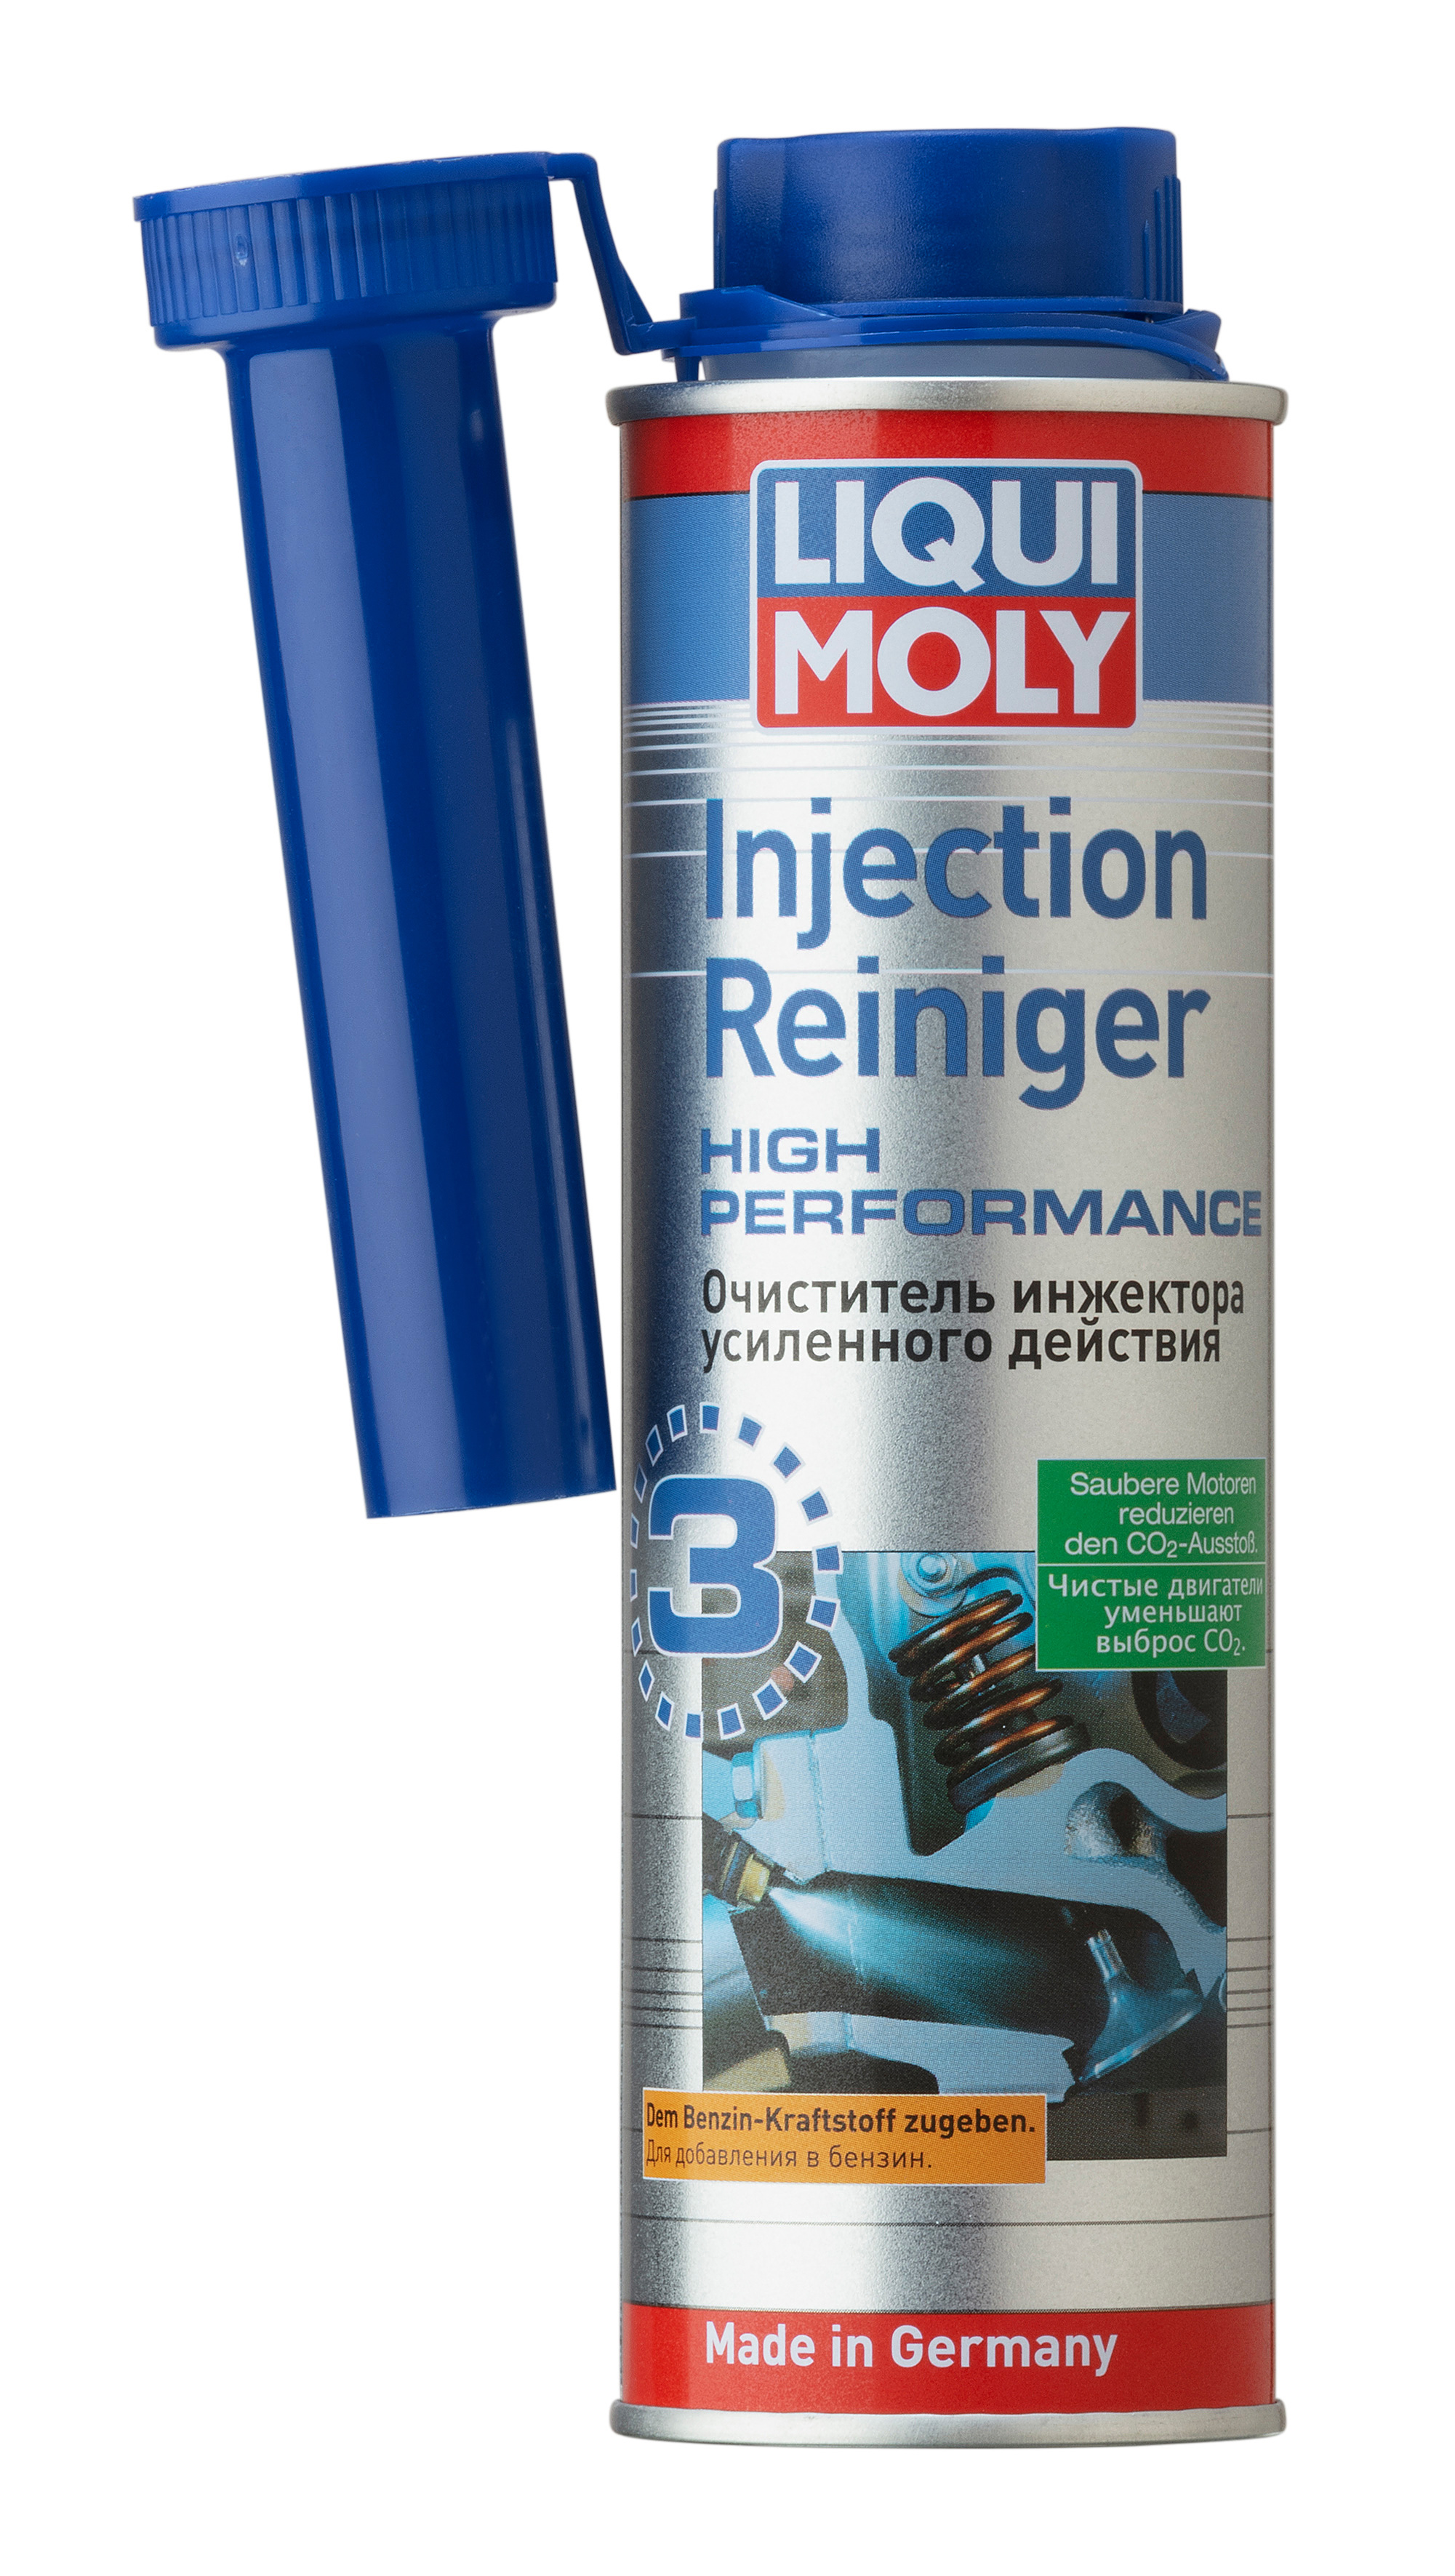 Очиститель инжектора LIQUI MOLY 0,3л Injection Reiniger High Performance